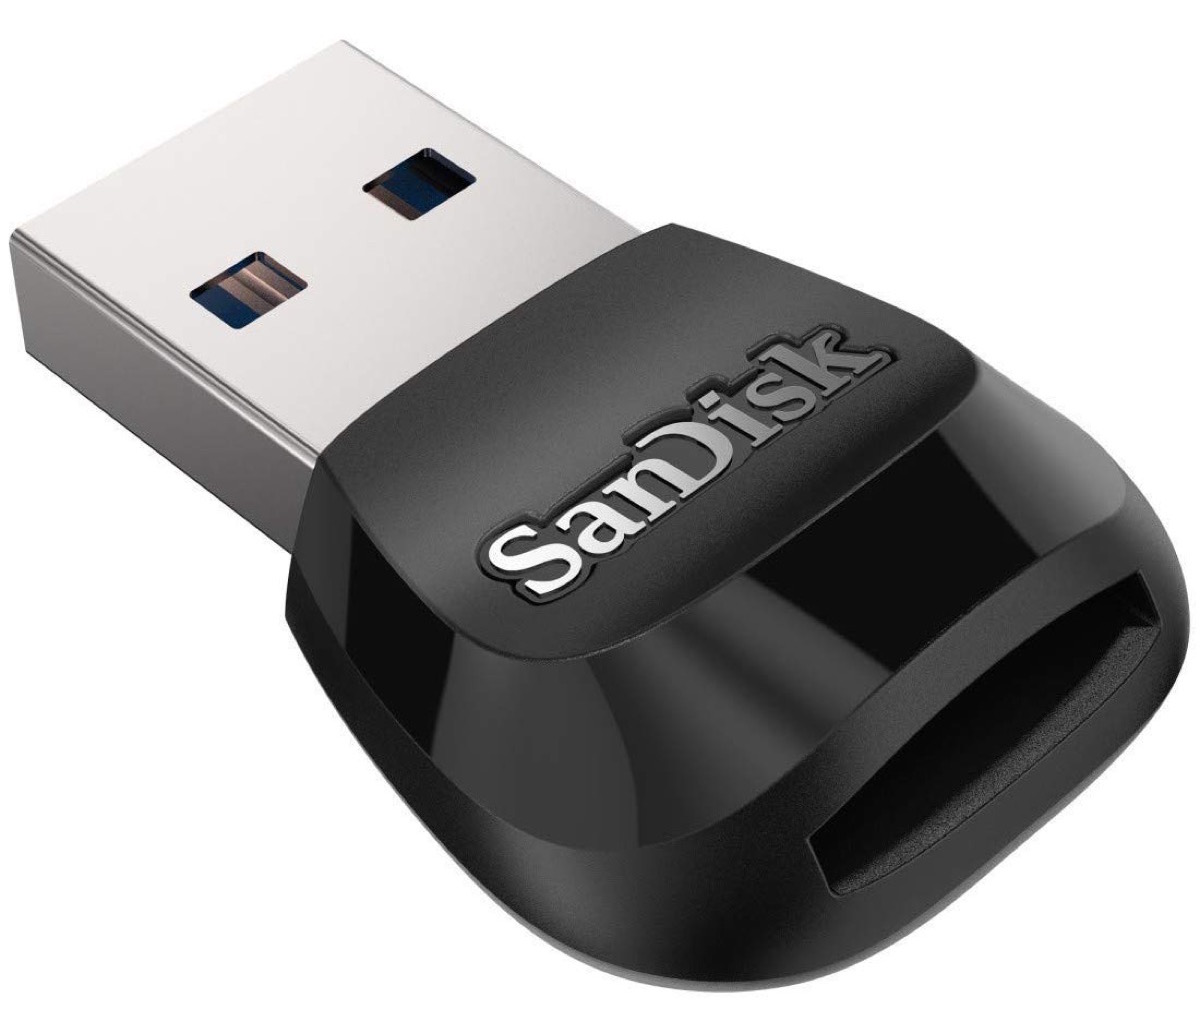 SanDisk MobileMate, il lettore microSD per porte USB